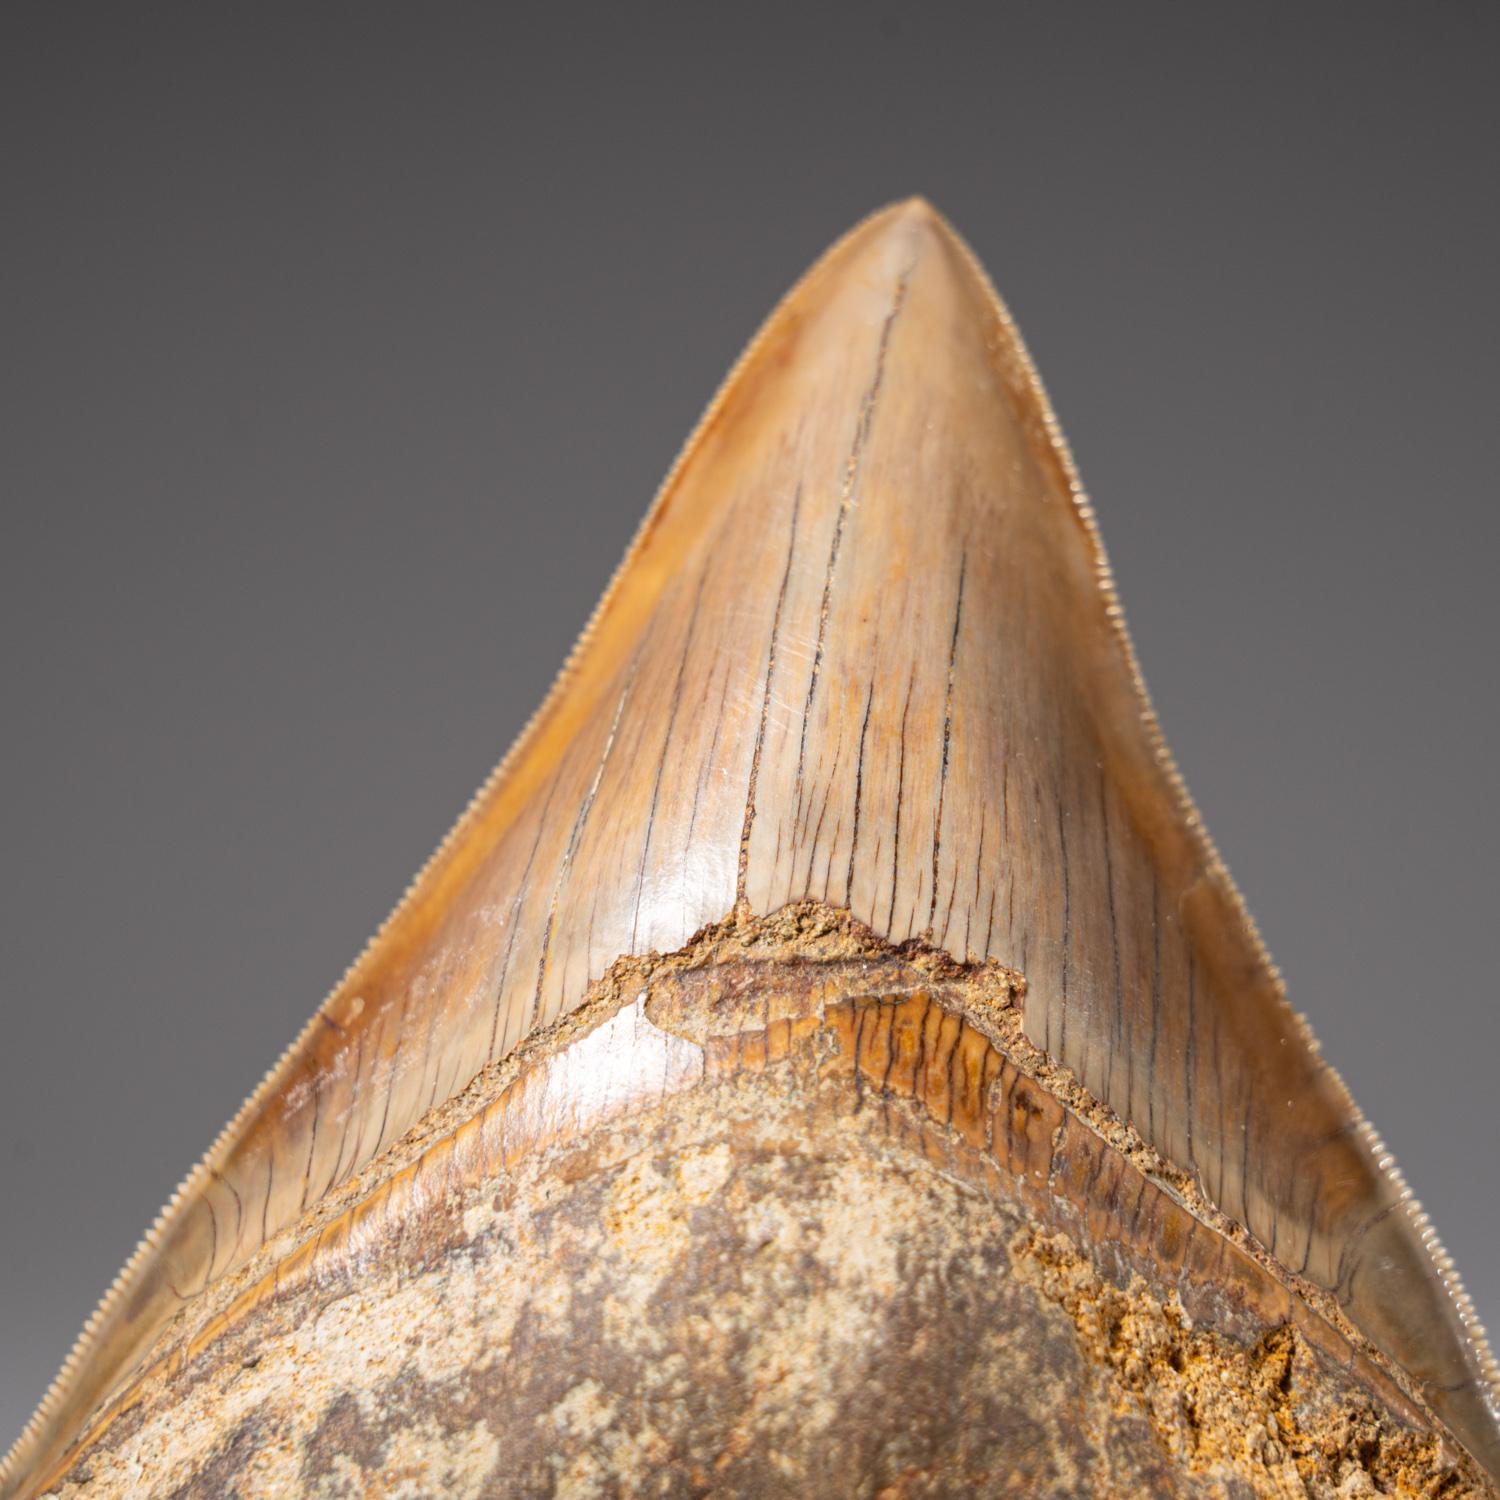 Der Megalodon war ein prähistorischer Hai, der vielleicht 50 Fuß oder mehr lang war, zwei- oder dreimal so lang wie der Große Weiße Hai! Genau wie moderne Haie hatte dieses prähistorische Raubtier außer seinen massiven Zähnen keine Knochen, die in